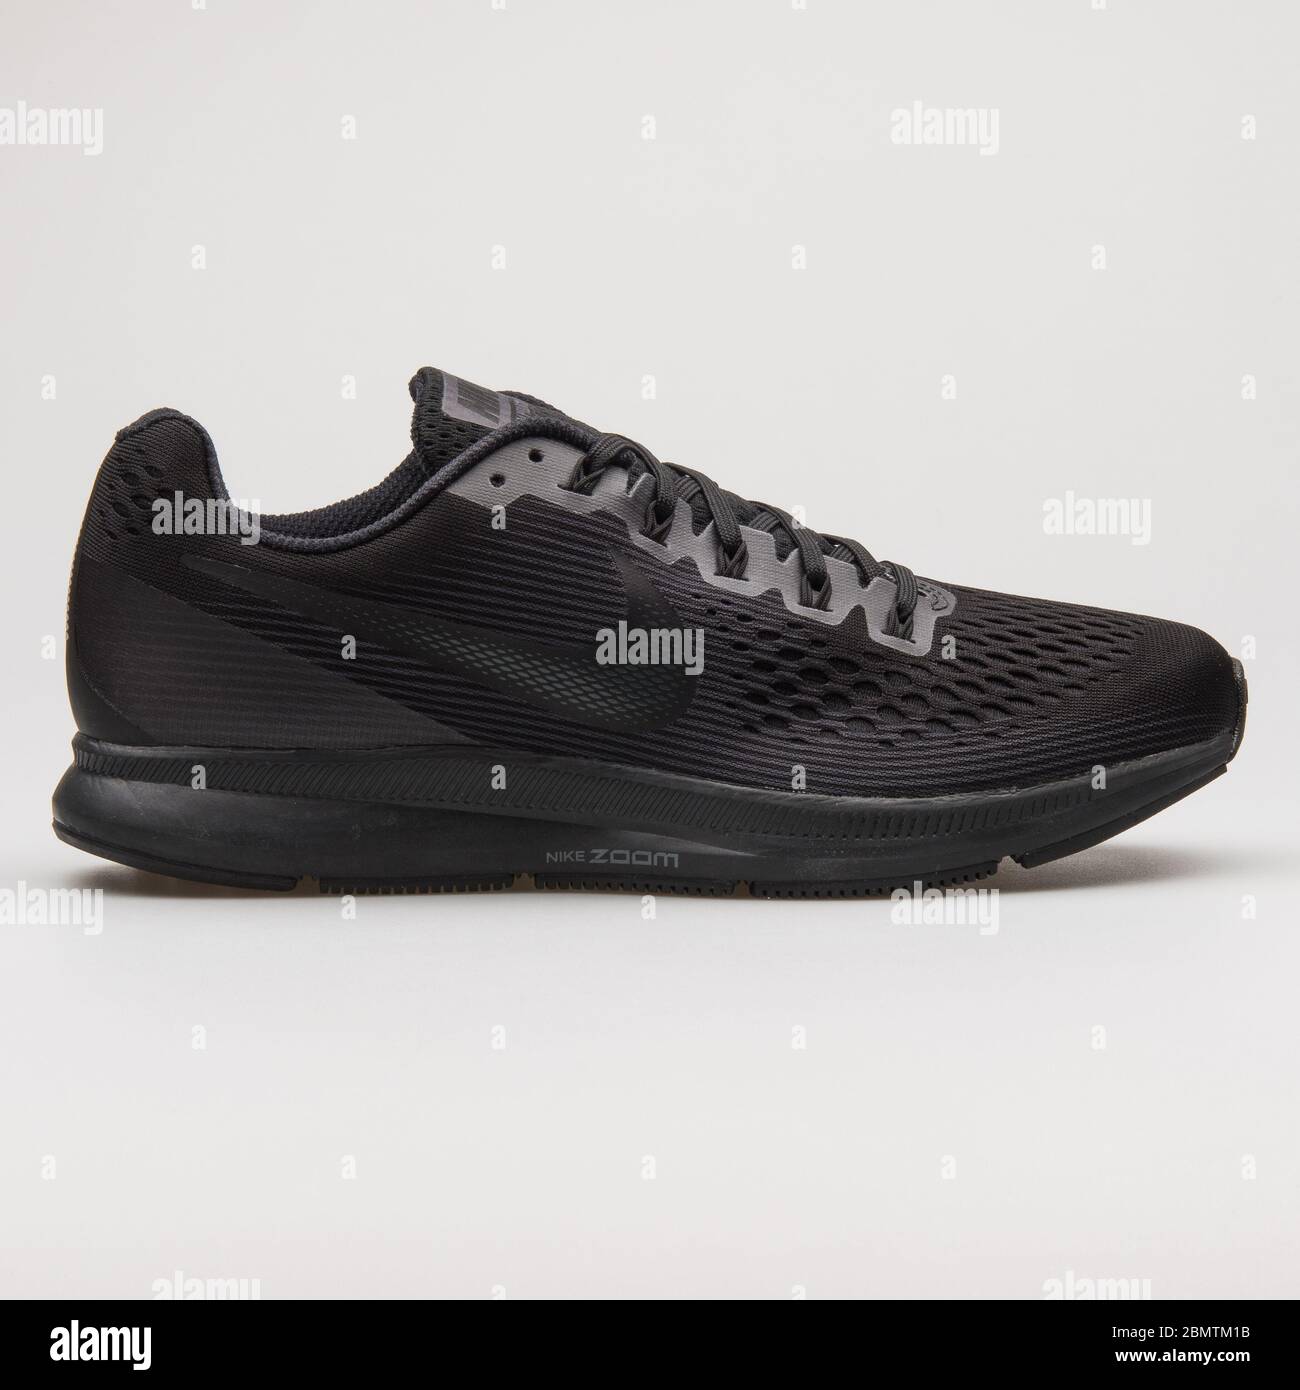 VIENNA, AUSTRIA - FEBRUARY 19, 2018: Nike Air Zoom Pegasus 34 black sneaker  on white background Stock Photo - Alamy